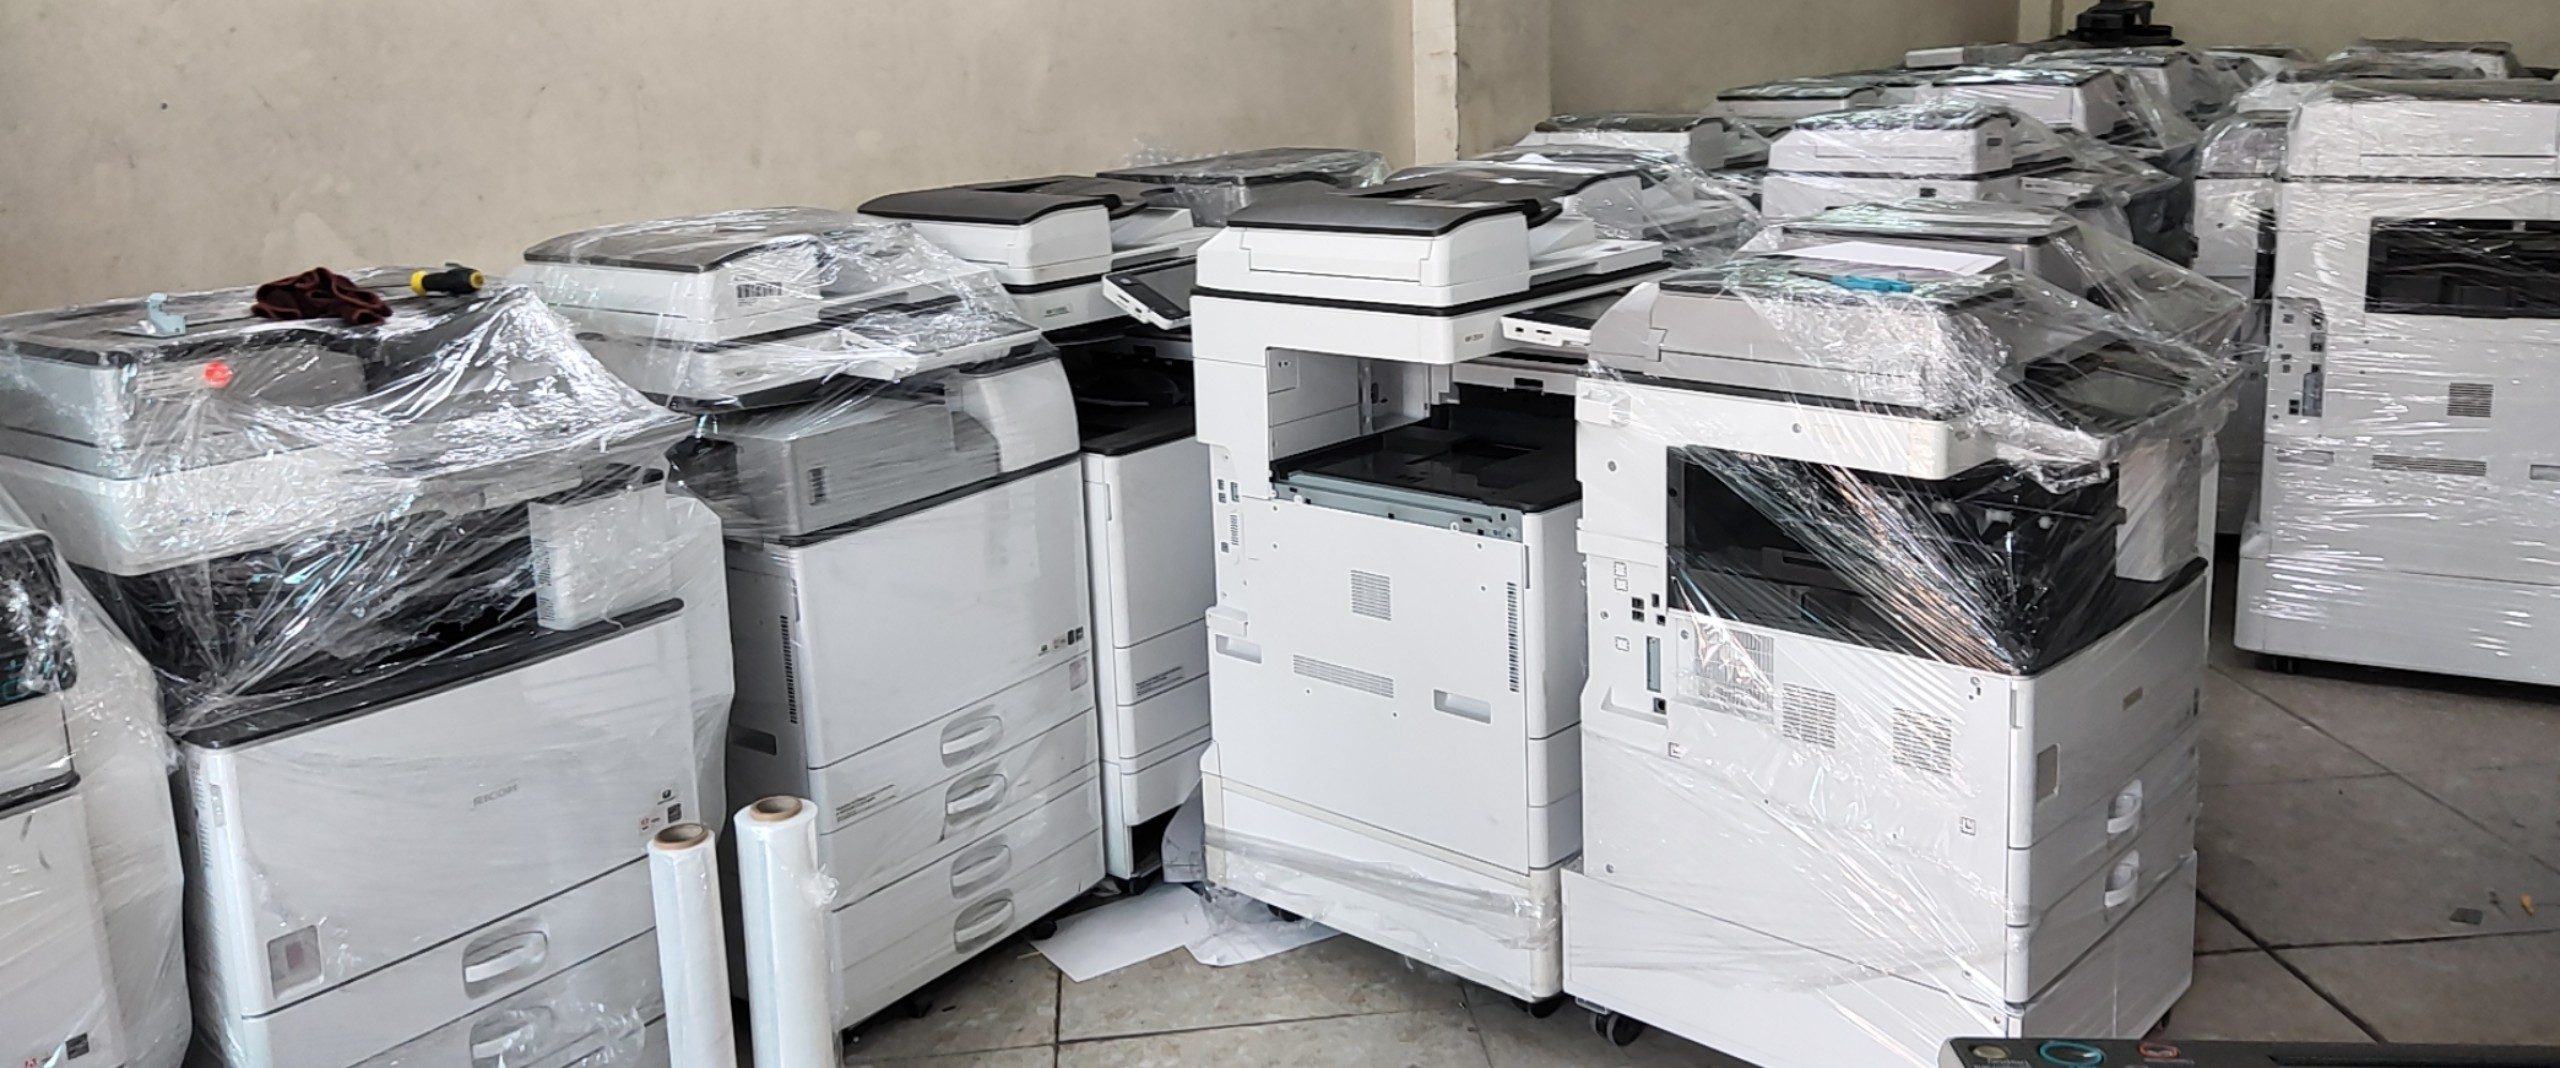 Chương trình khuyến mãi lớn cuối năm của Thanh Bình: bán máy photocopy cũ giá rẻ